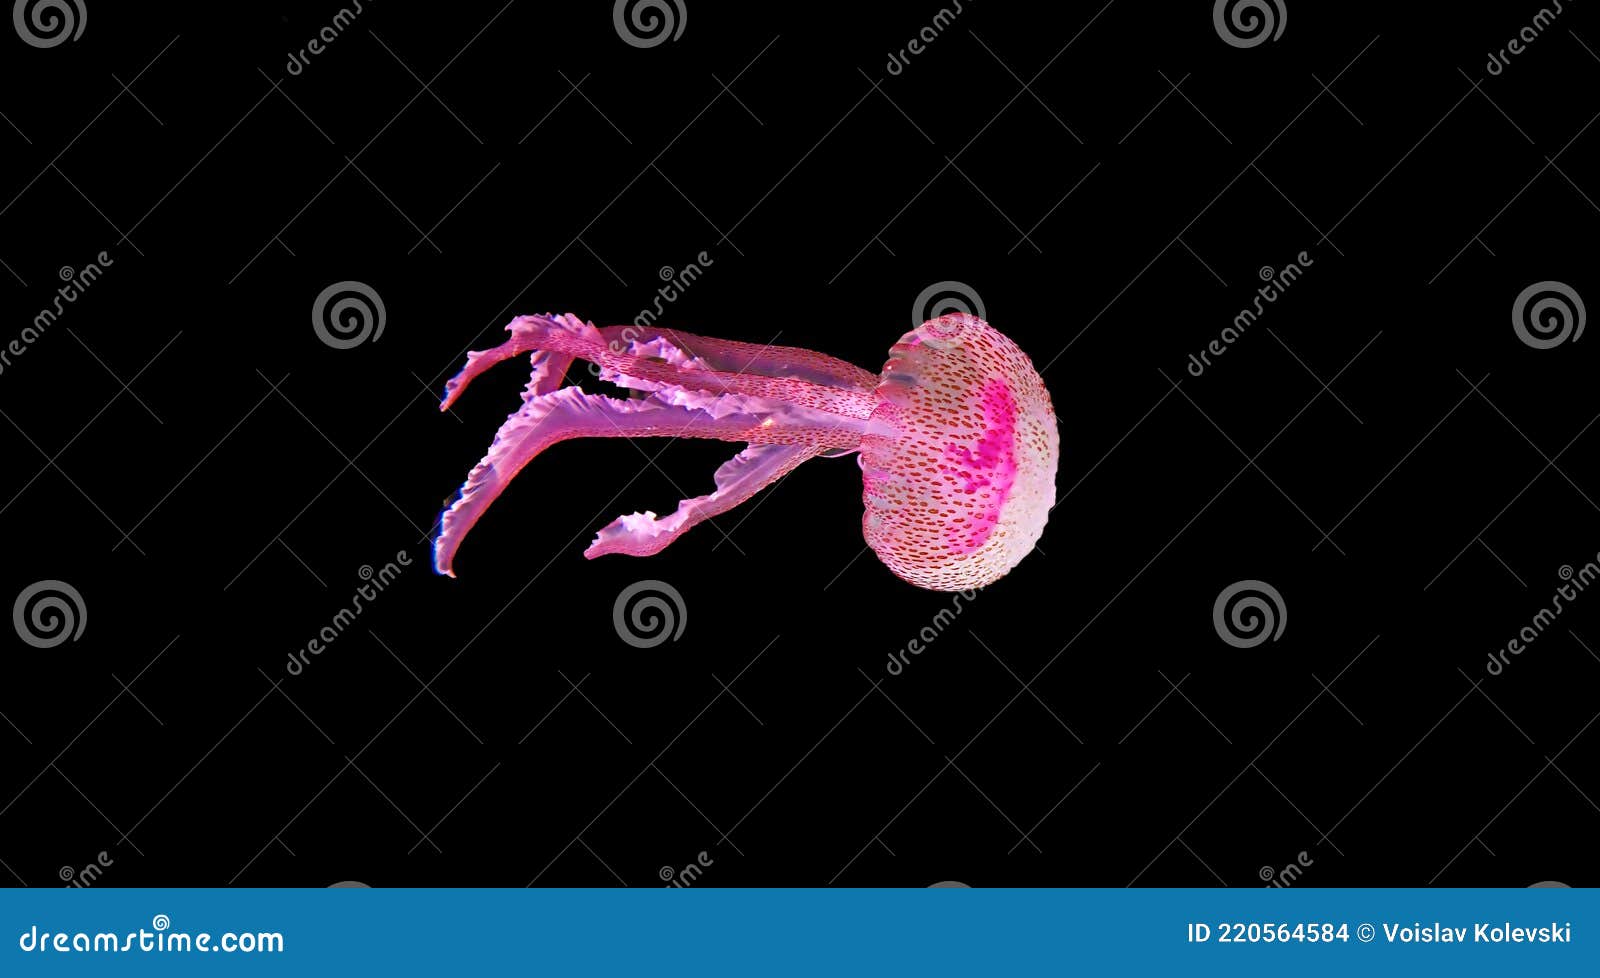 mauve stinger purple jellyfish - pelagia noctiluca